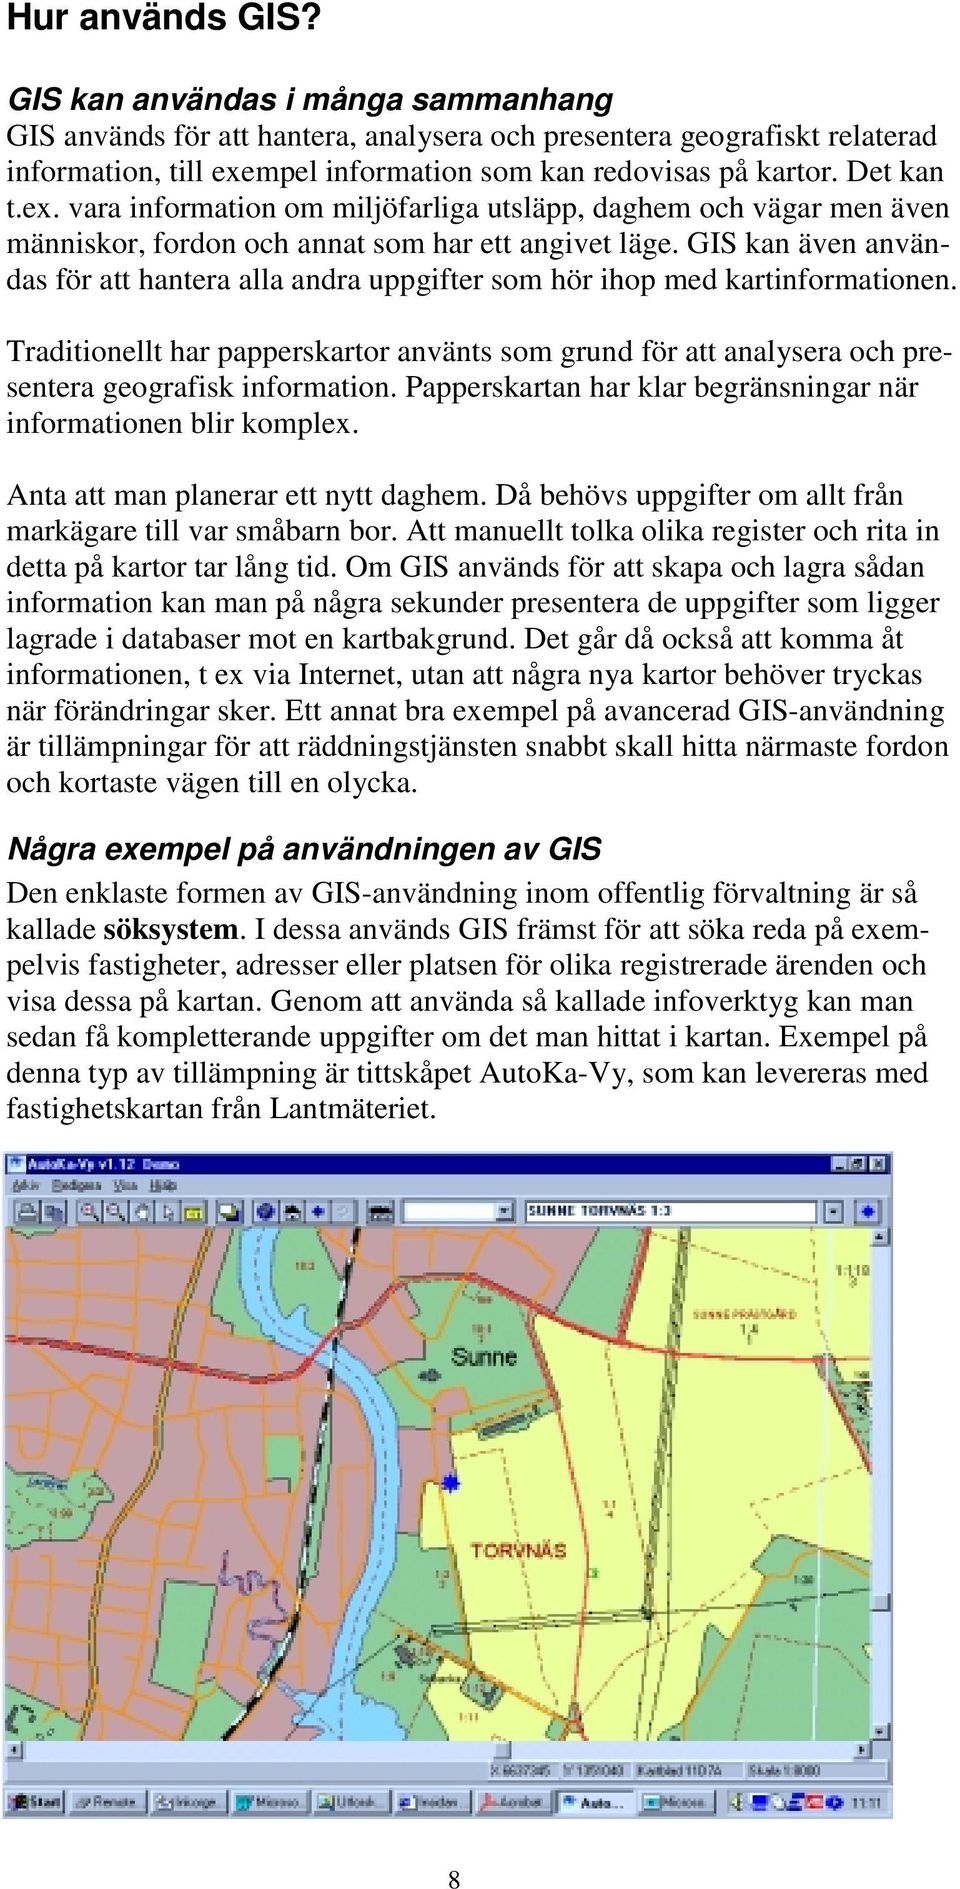 GIS kan även användas för att hantera alla andra uppgifter som hör ihop med kartinformationen.